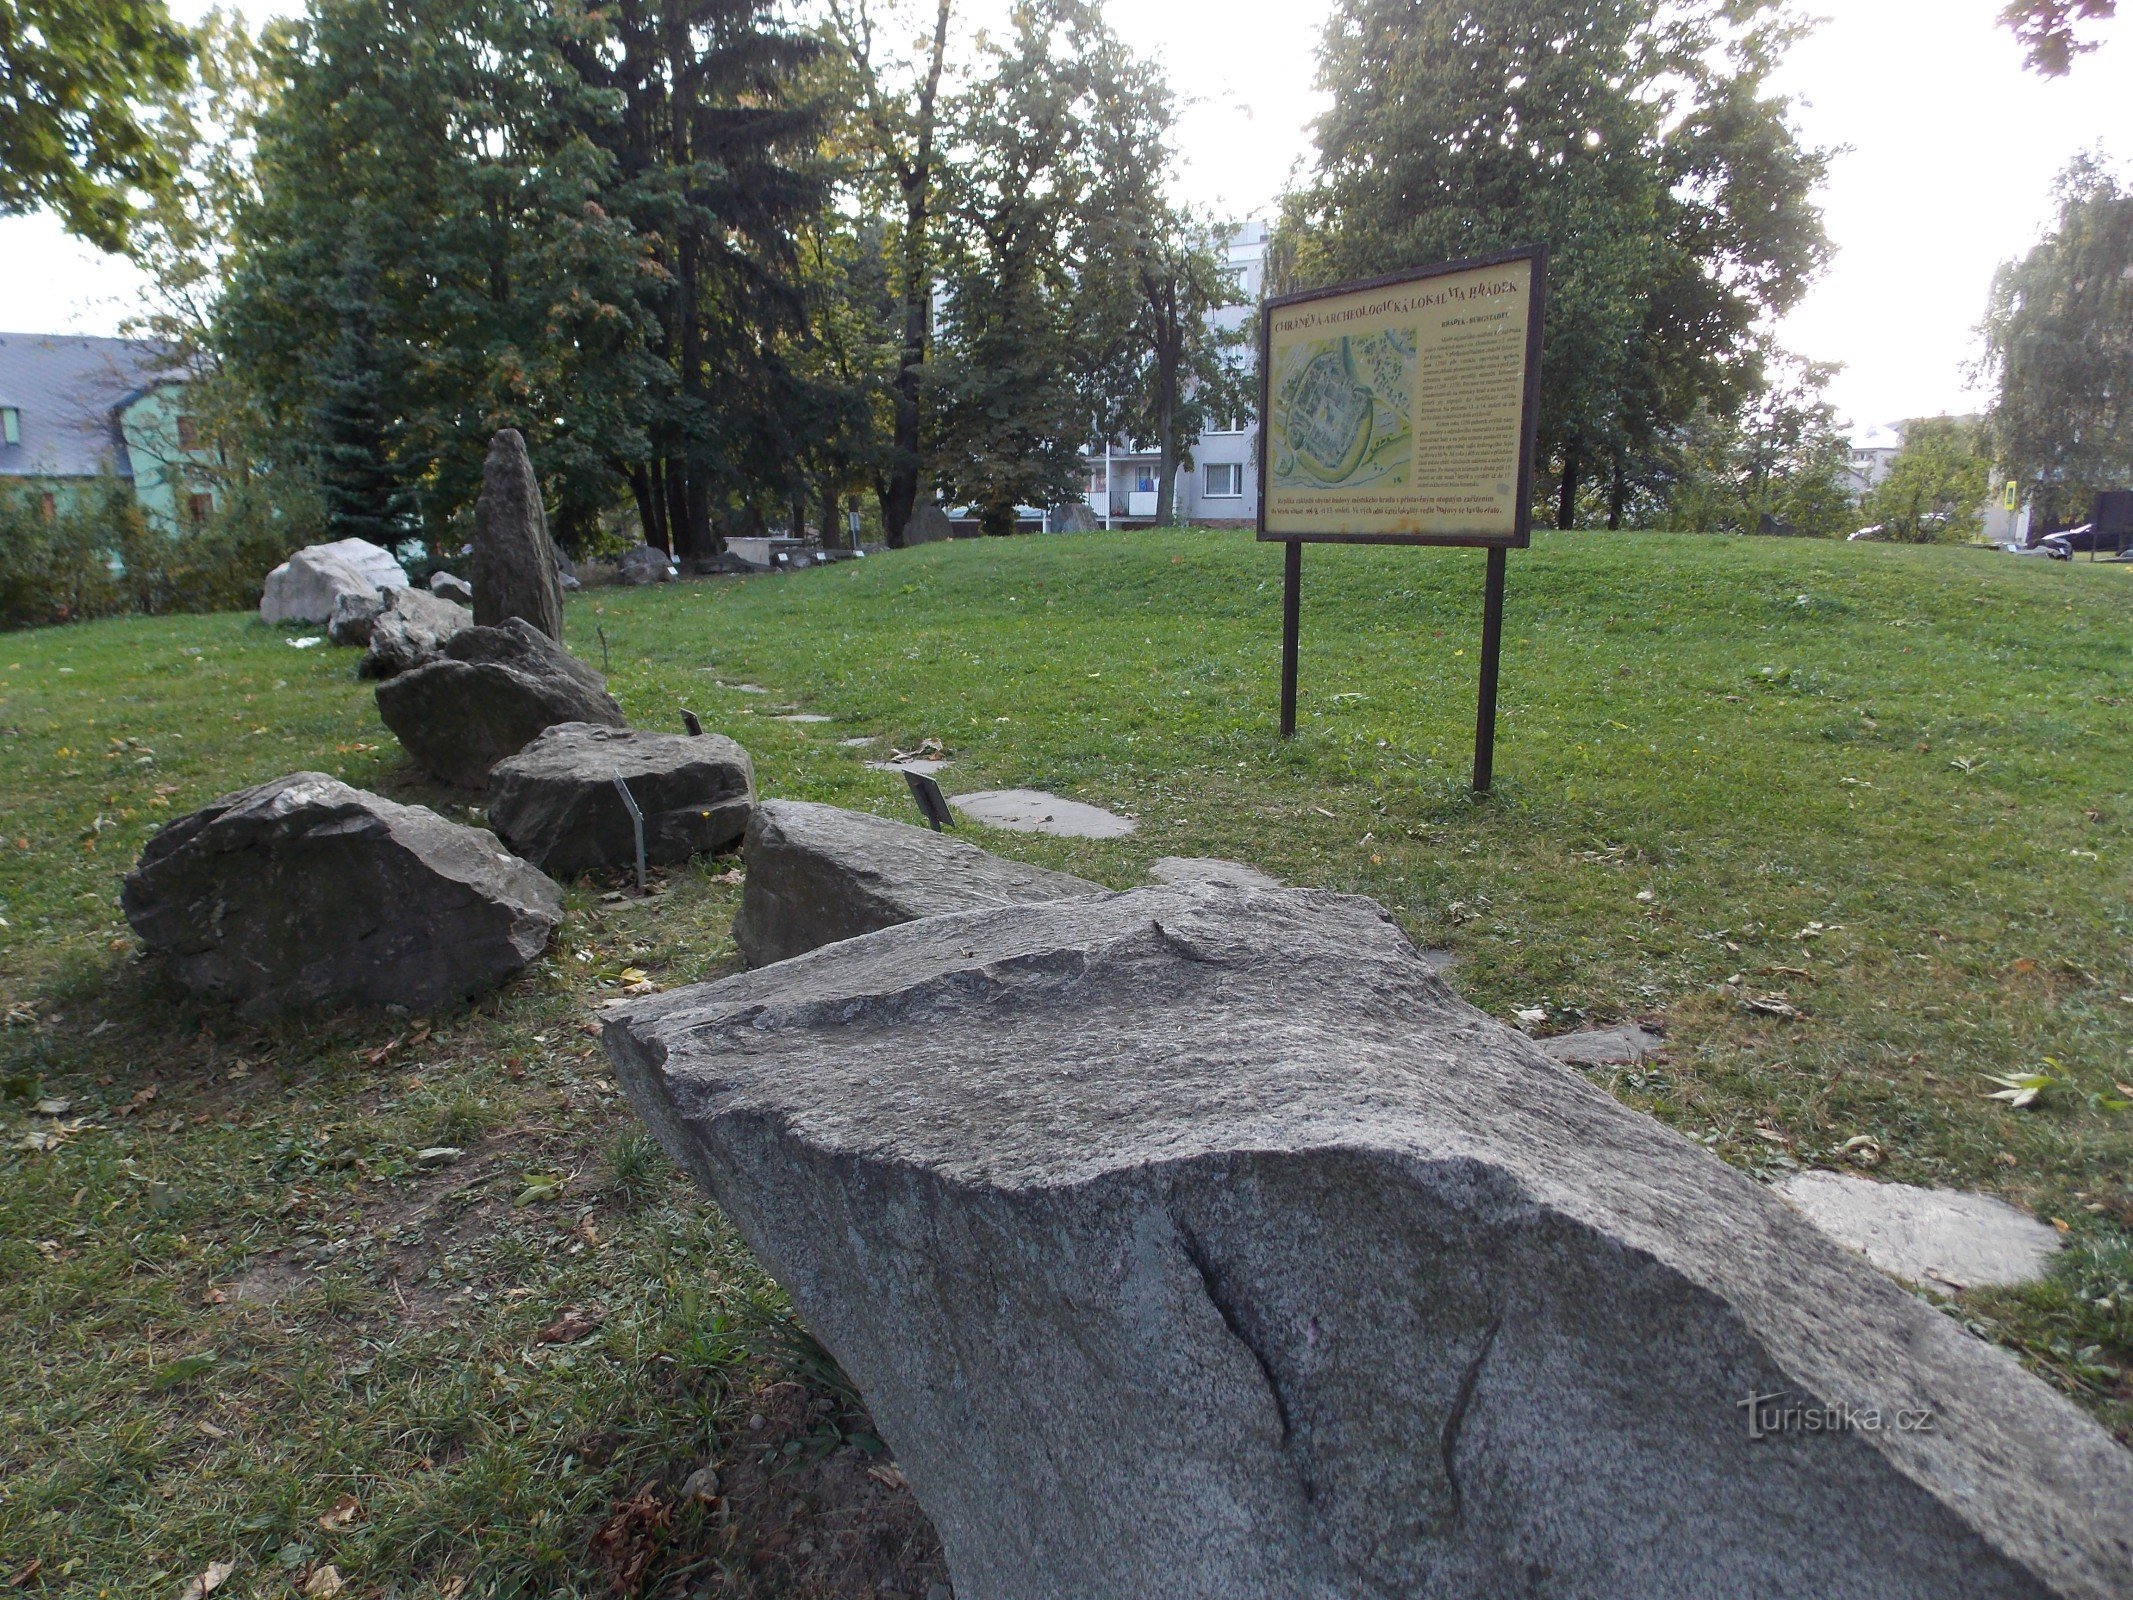 Археологический памятник Градек в Рымаржове